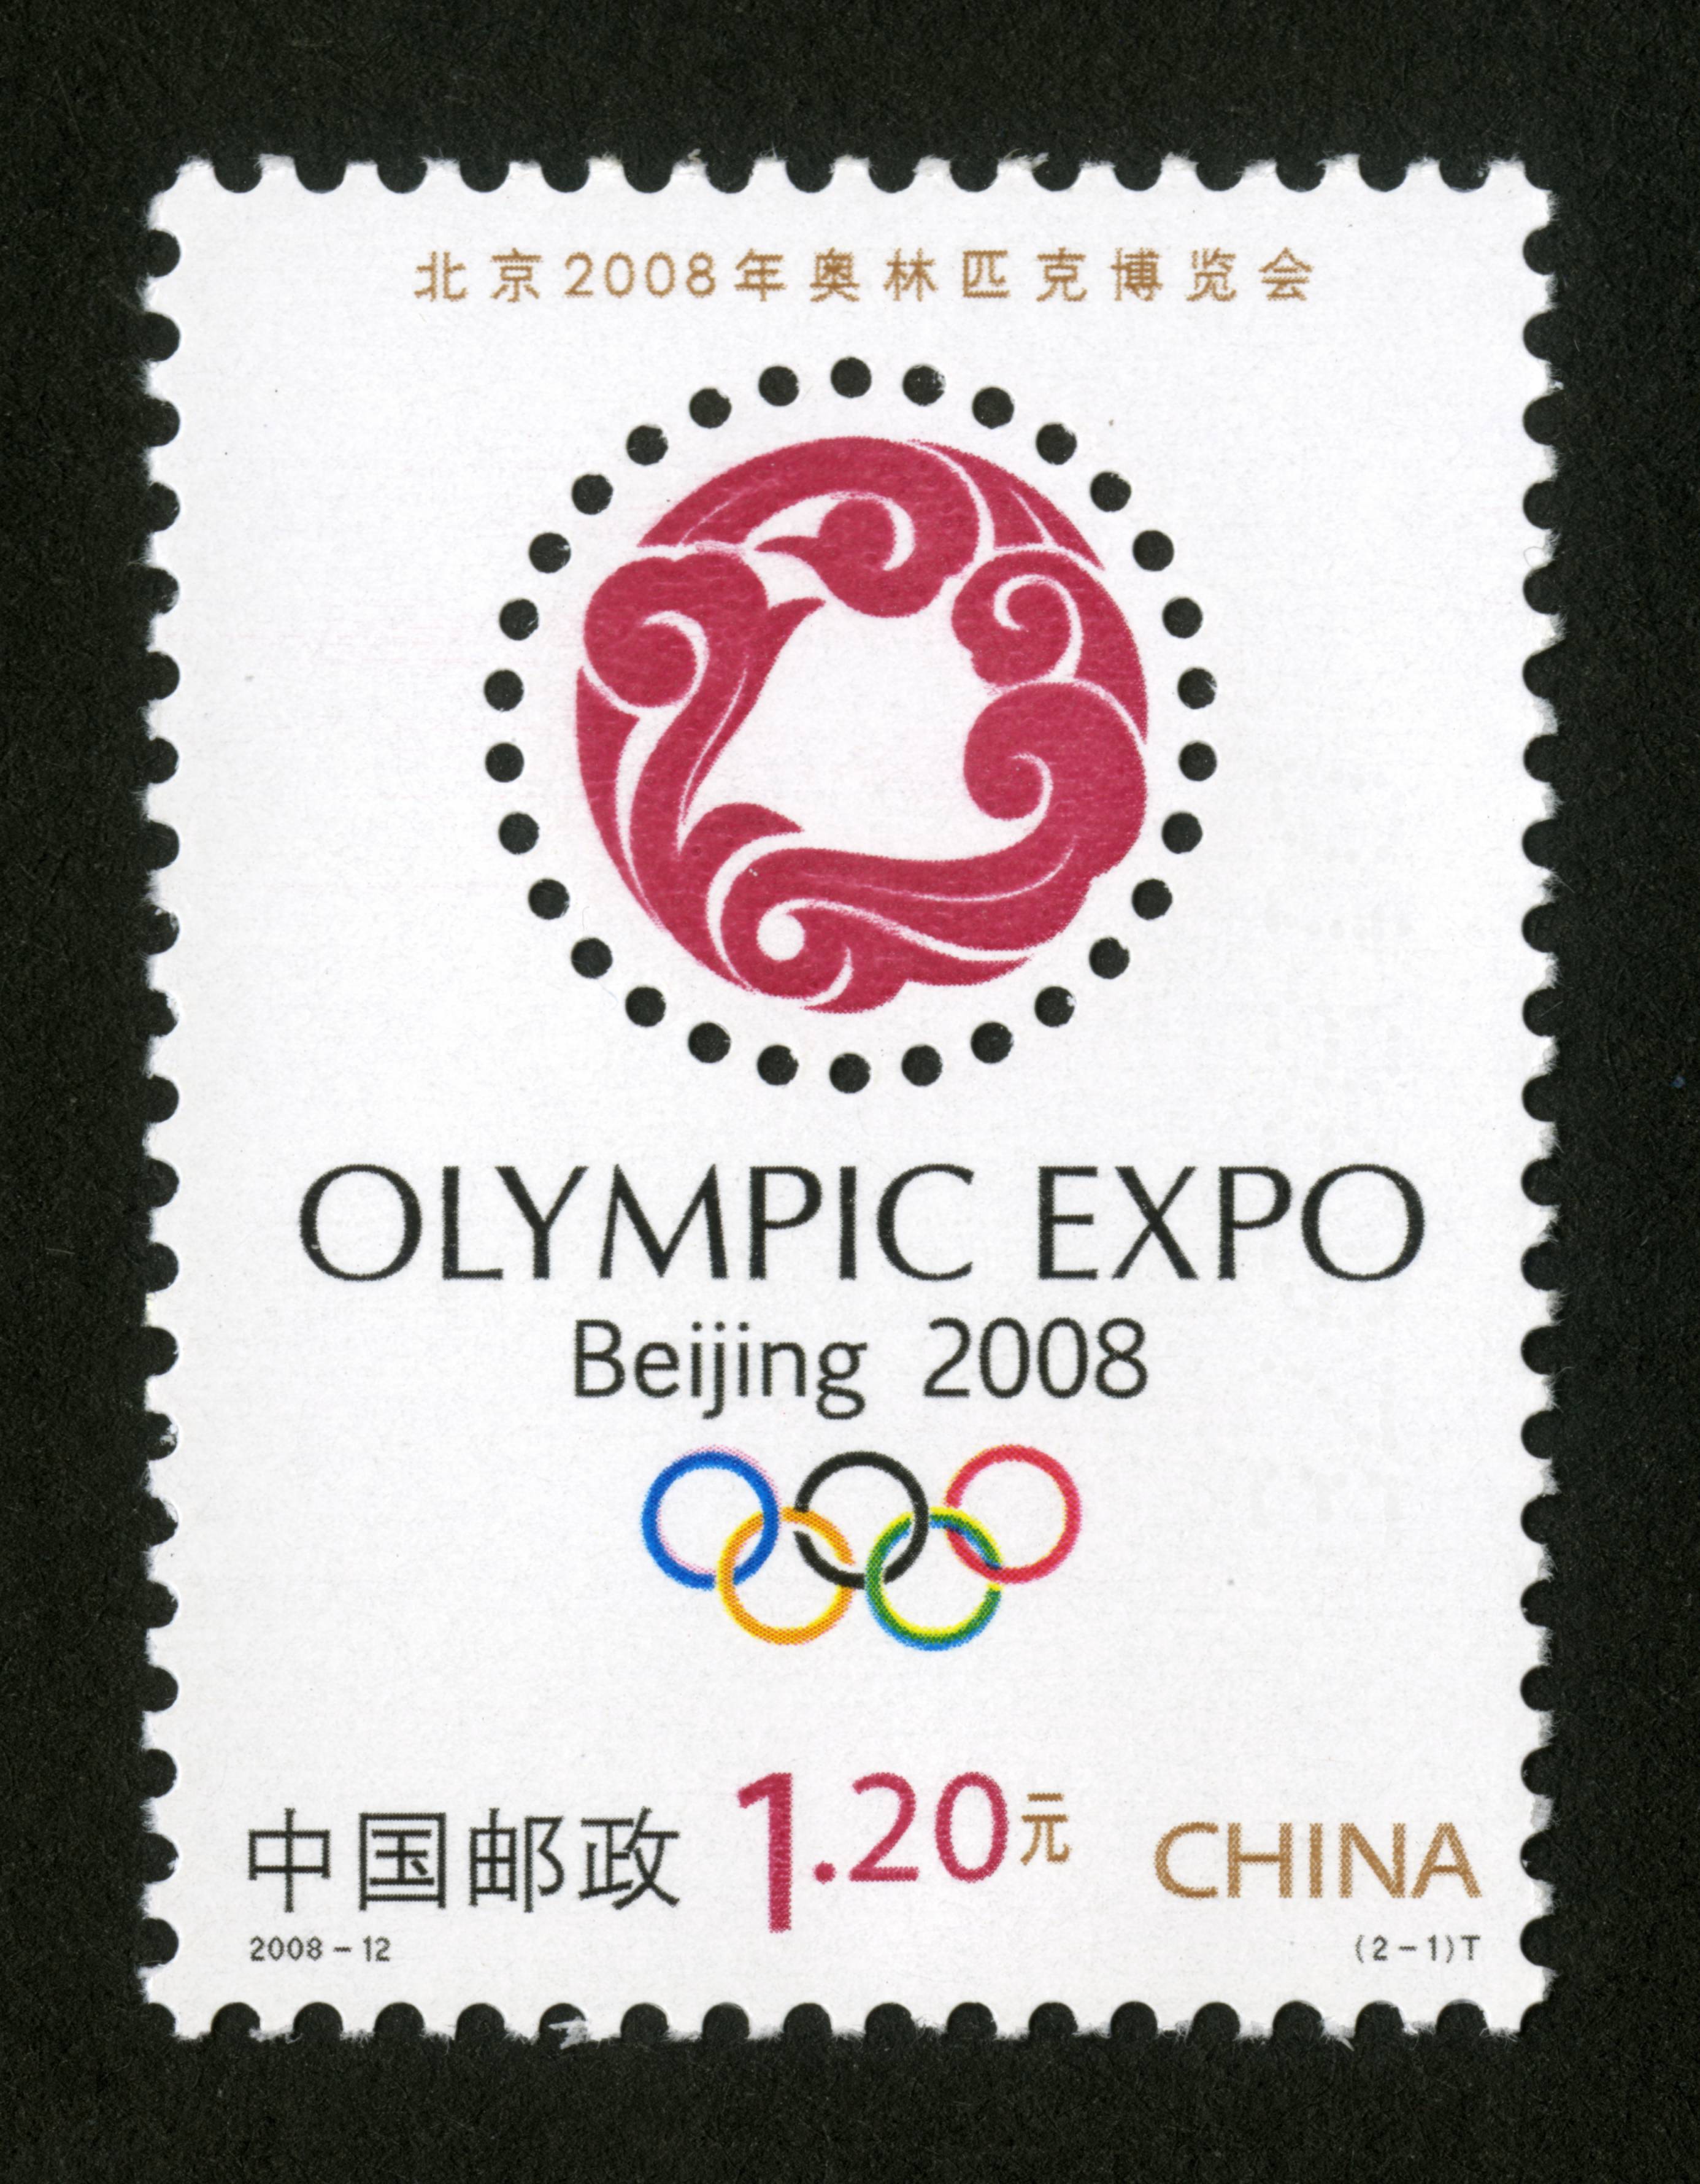 北京2008年奥林匹克博览会(t)